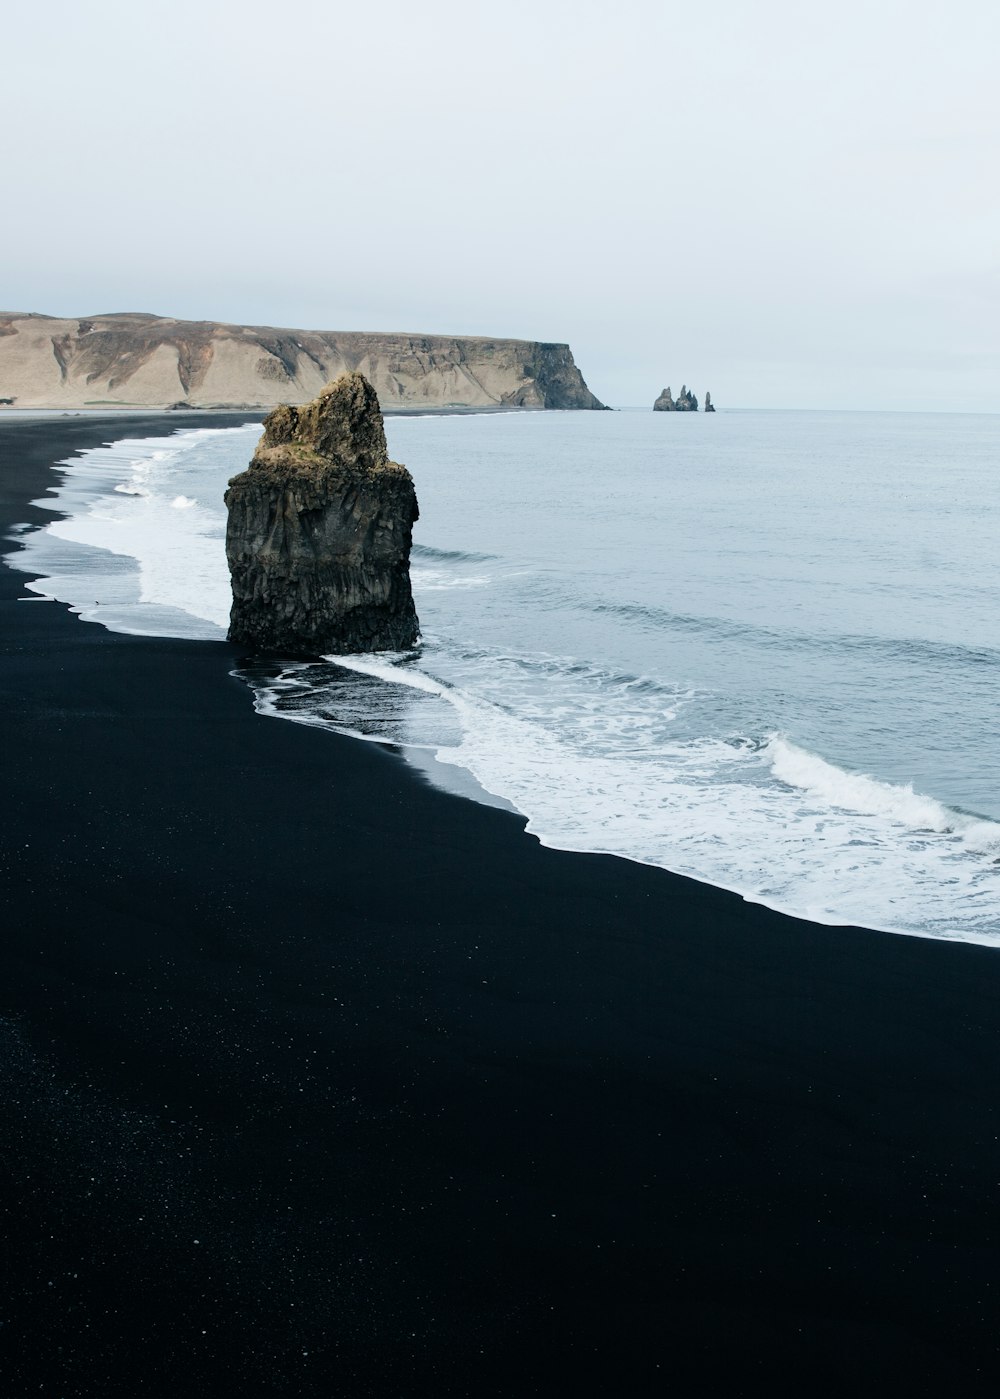 Brauner monolithischer Felsen am Meeresufer